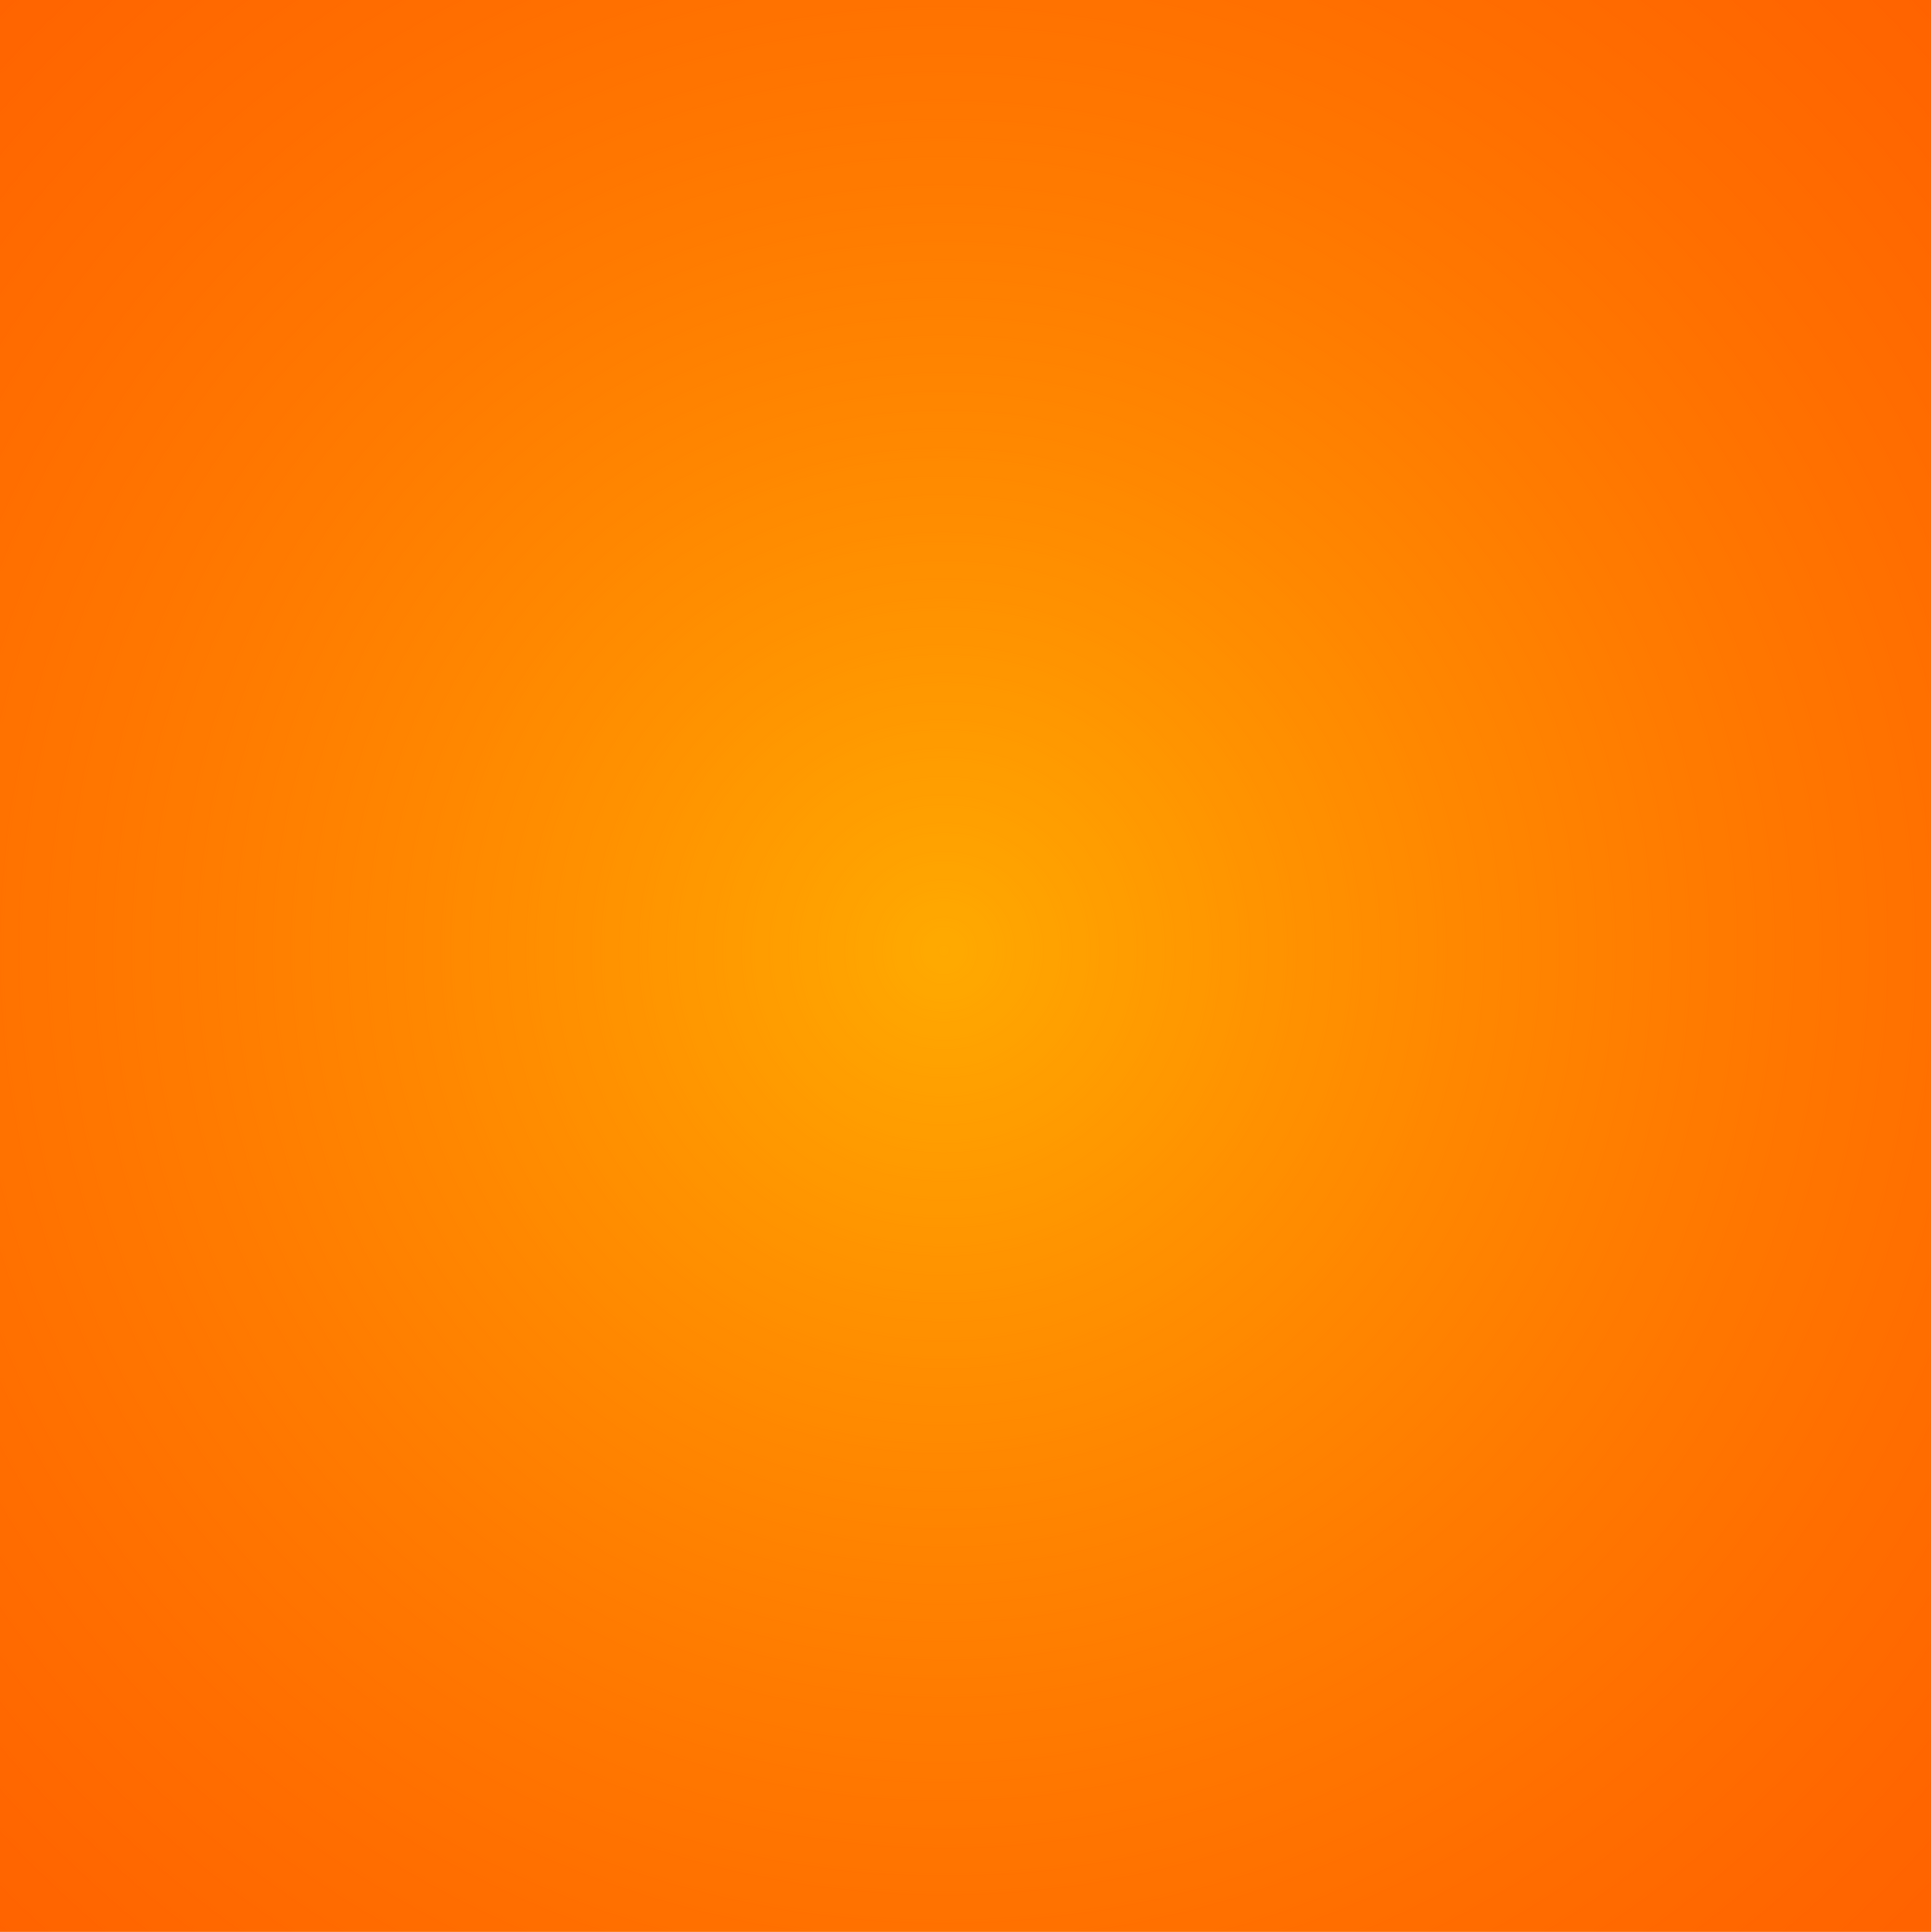 Orange gradient backgrount